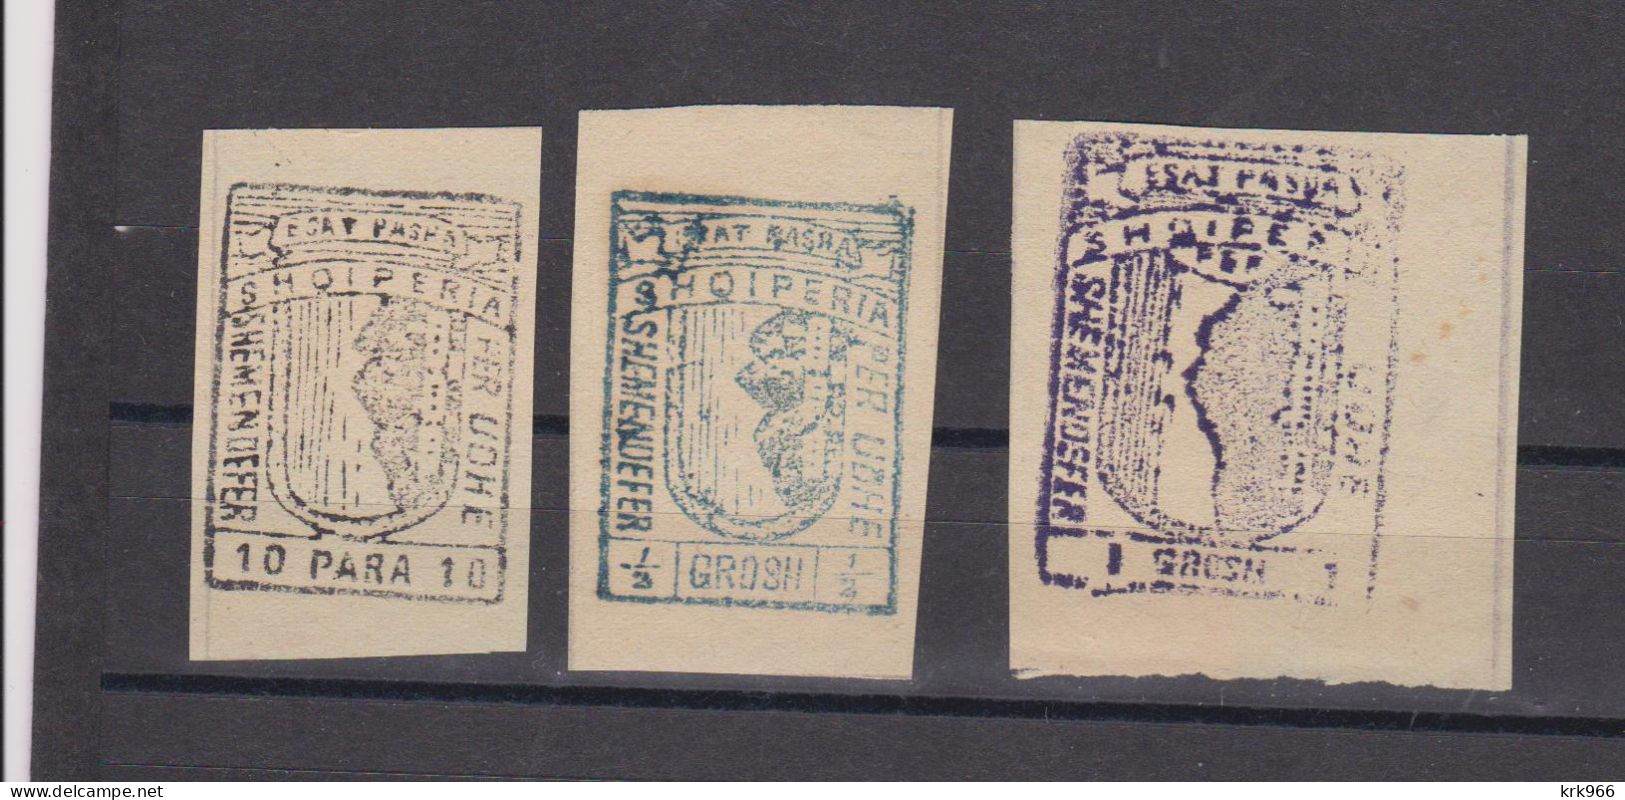 ALBANIA,, 1914,ESAT PASHA Revenue Stamp Used As Paper Money 1/2 Grosh , 1 Grosh ,10 Para - Albanien